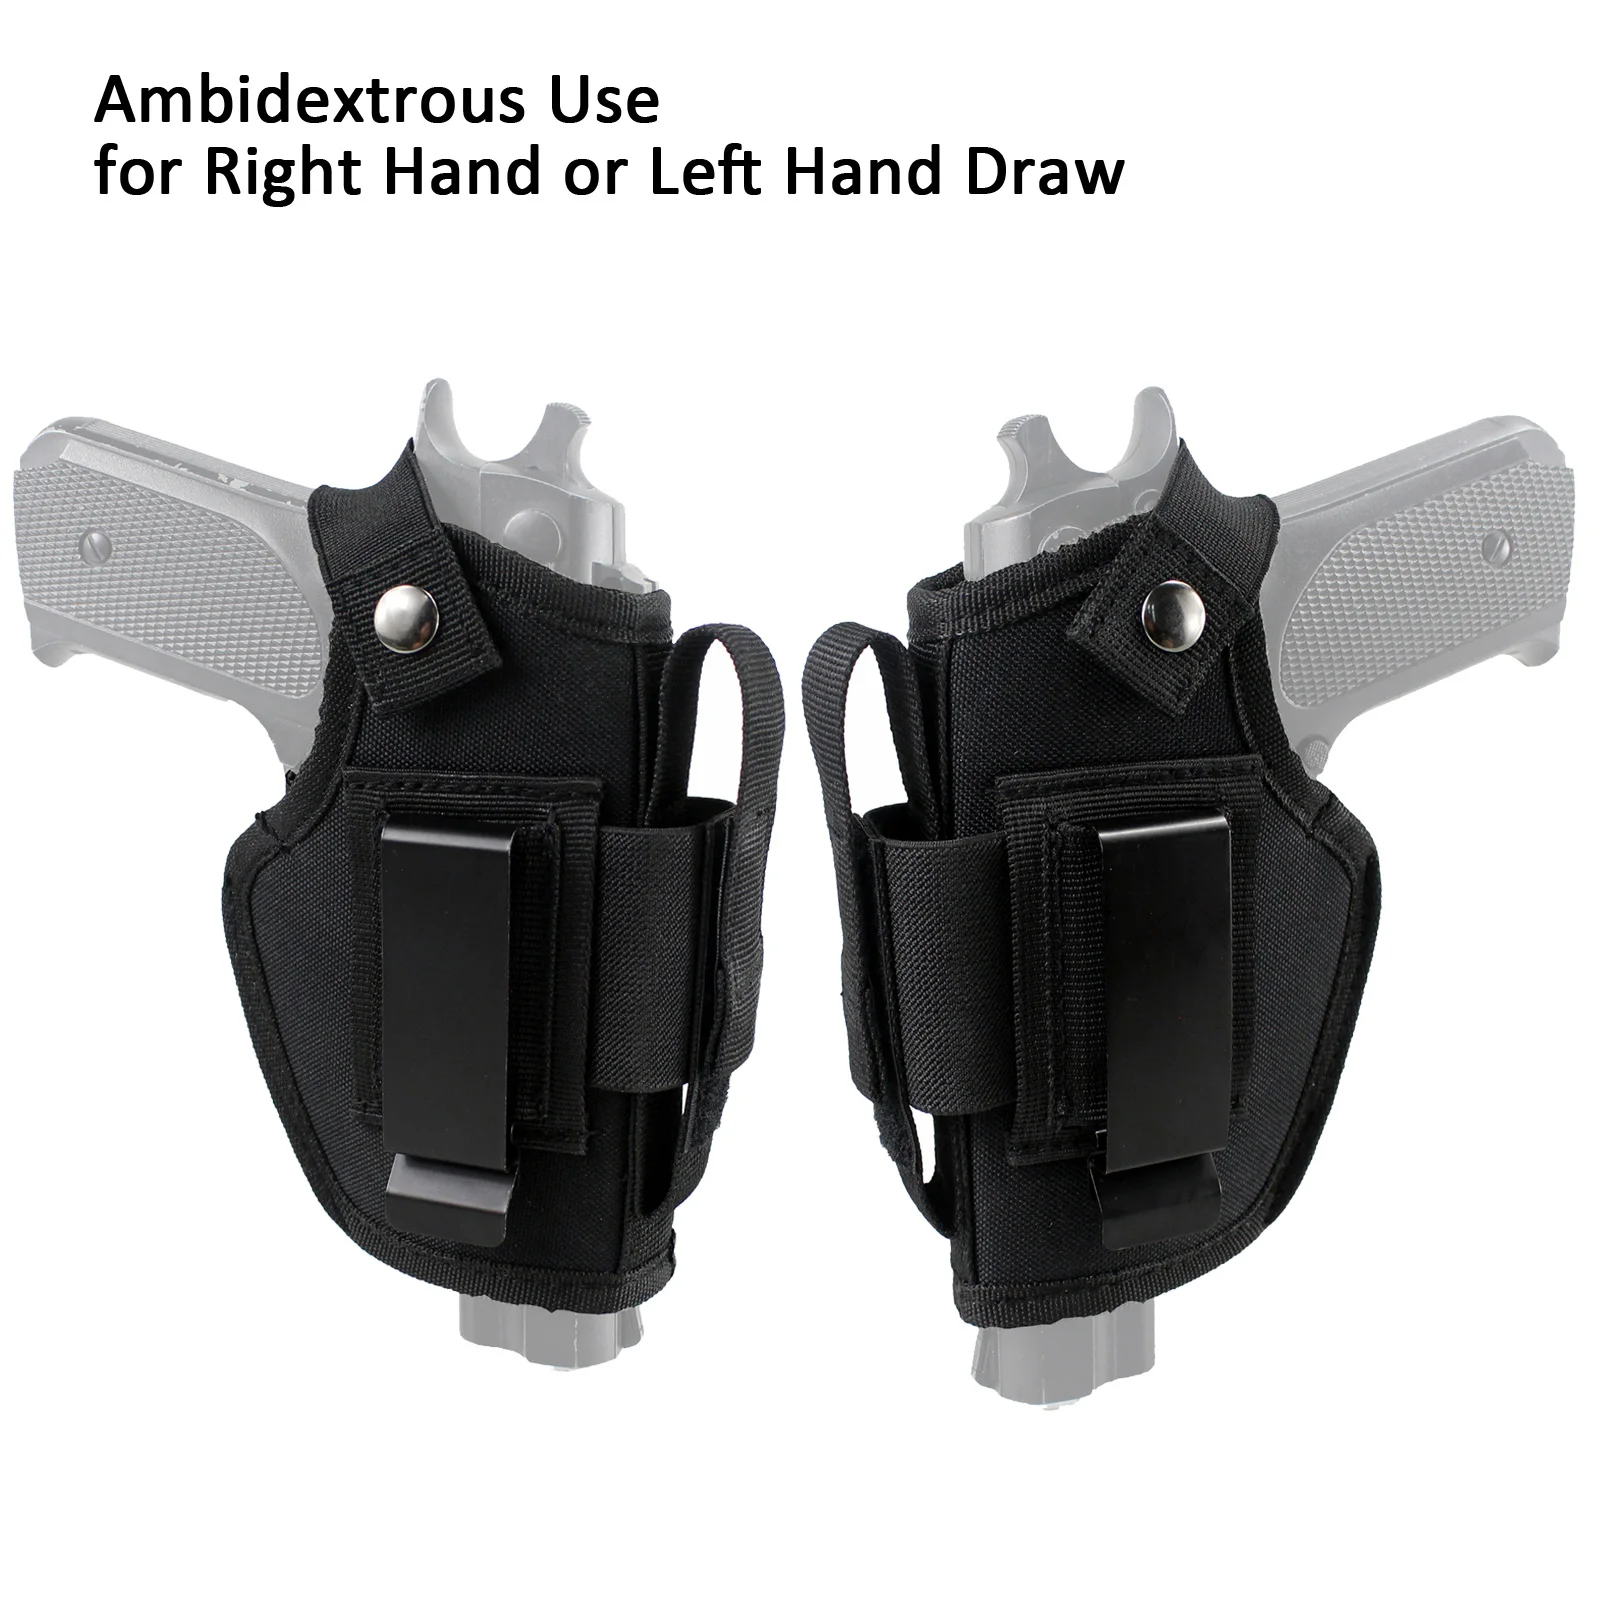 IWB OWB автомобильный кобура для скрытого ношения с 2 ремешками крепления Ambidextrous Draw подходит для некомпактных больших пистолетов